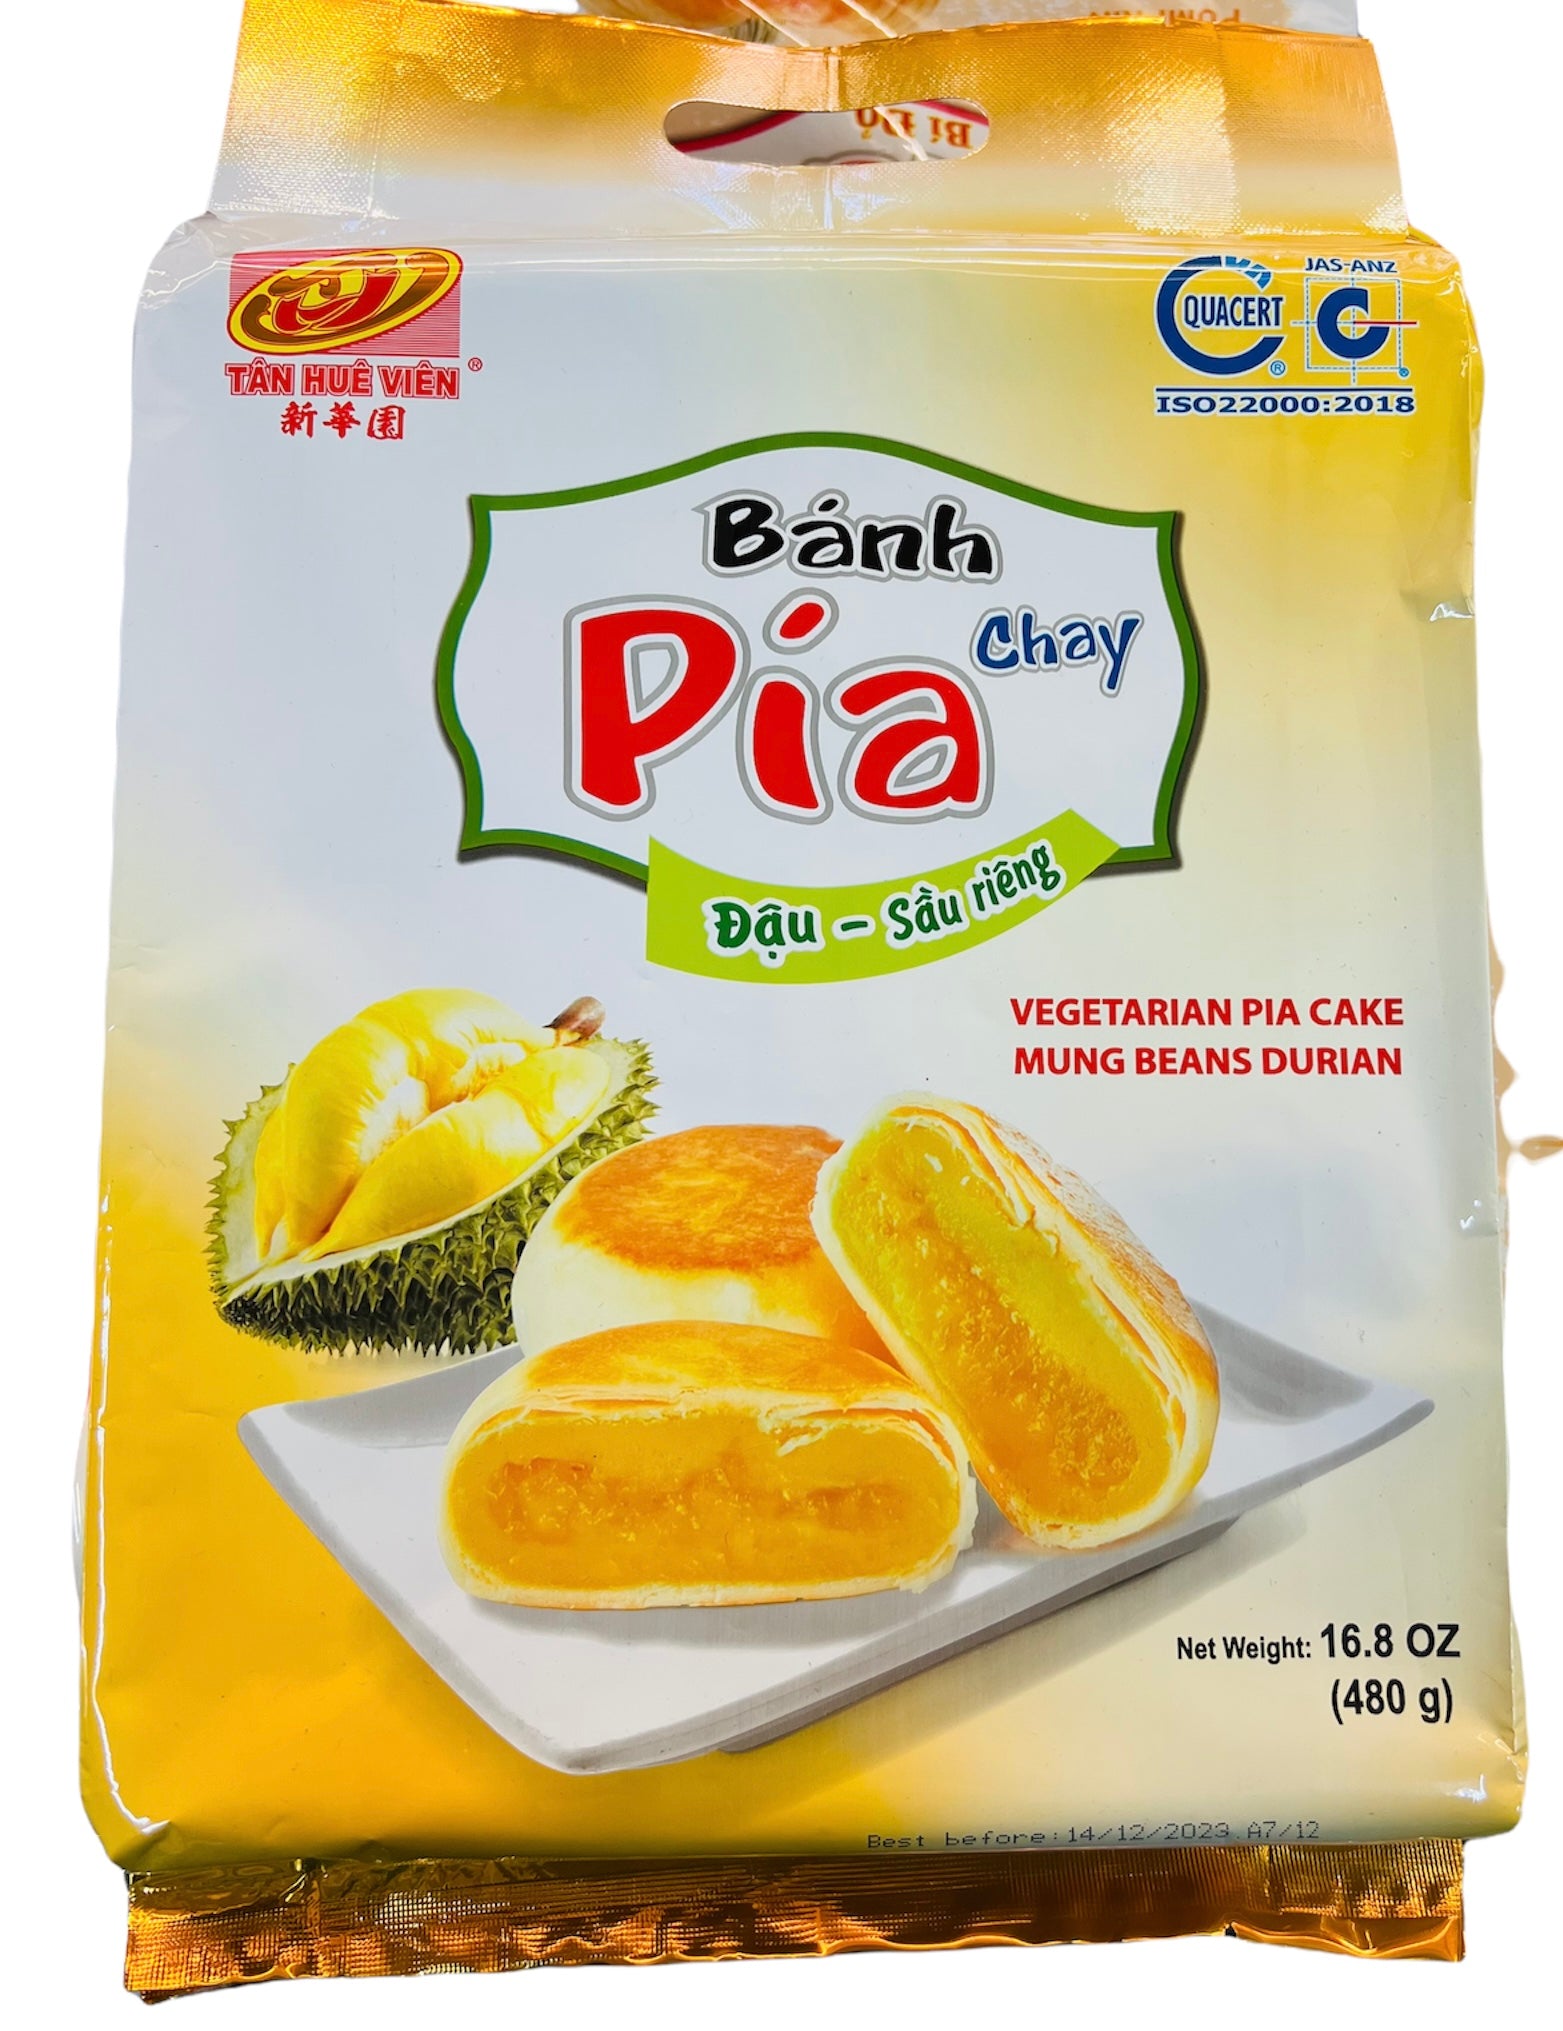 Pia cake - Mung Bean Durian - Bánh Pía đậu xanh sầu riêng (chay) 480g Tan Hue Vien